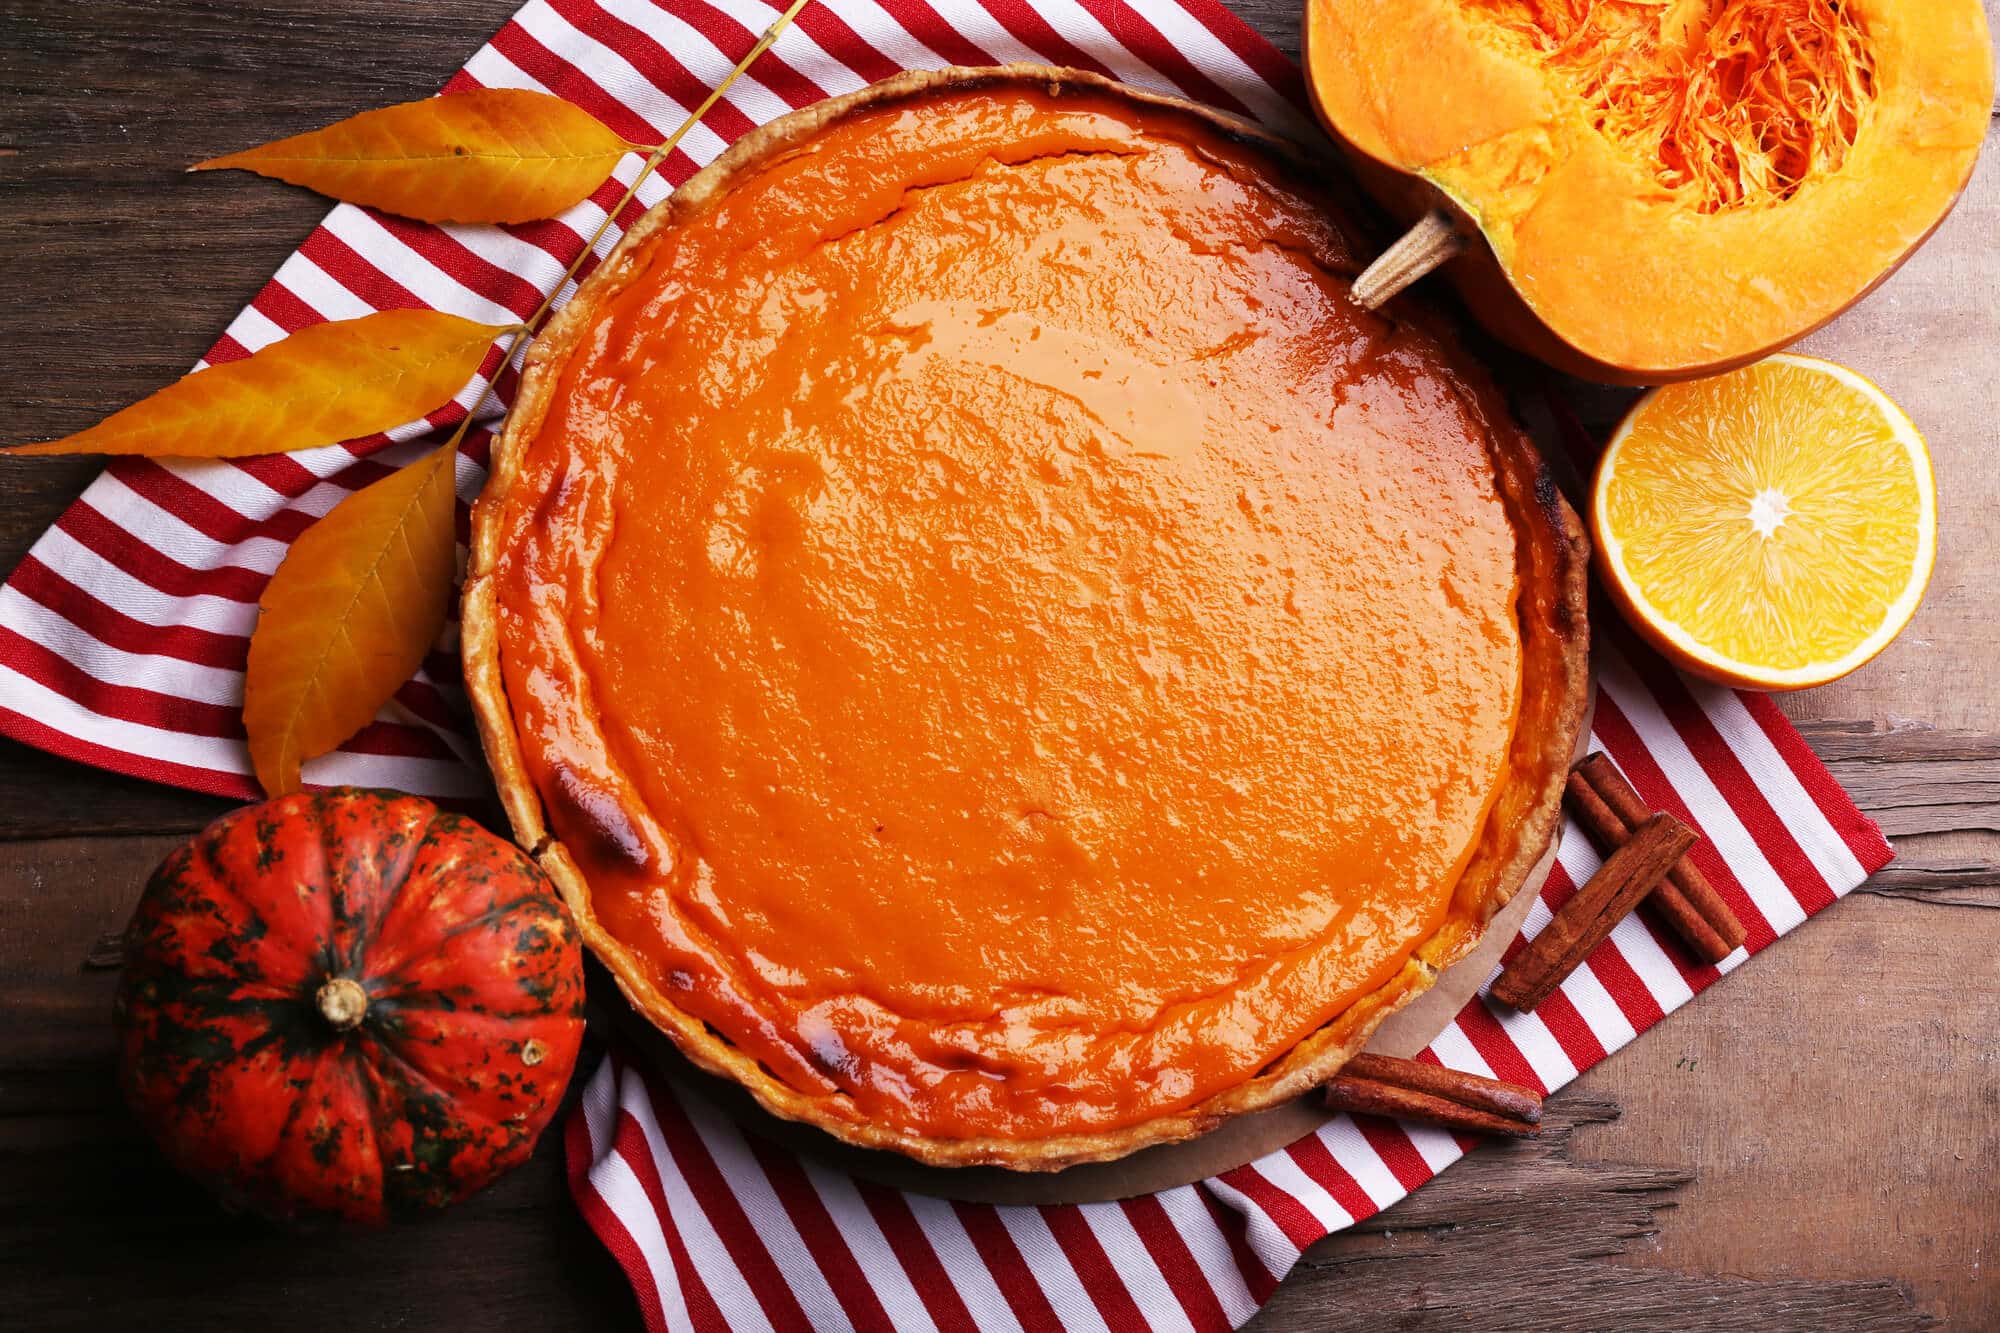 Homemade pumpkin pie on napkin, on wooden background.